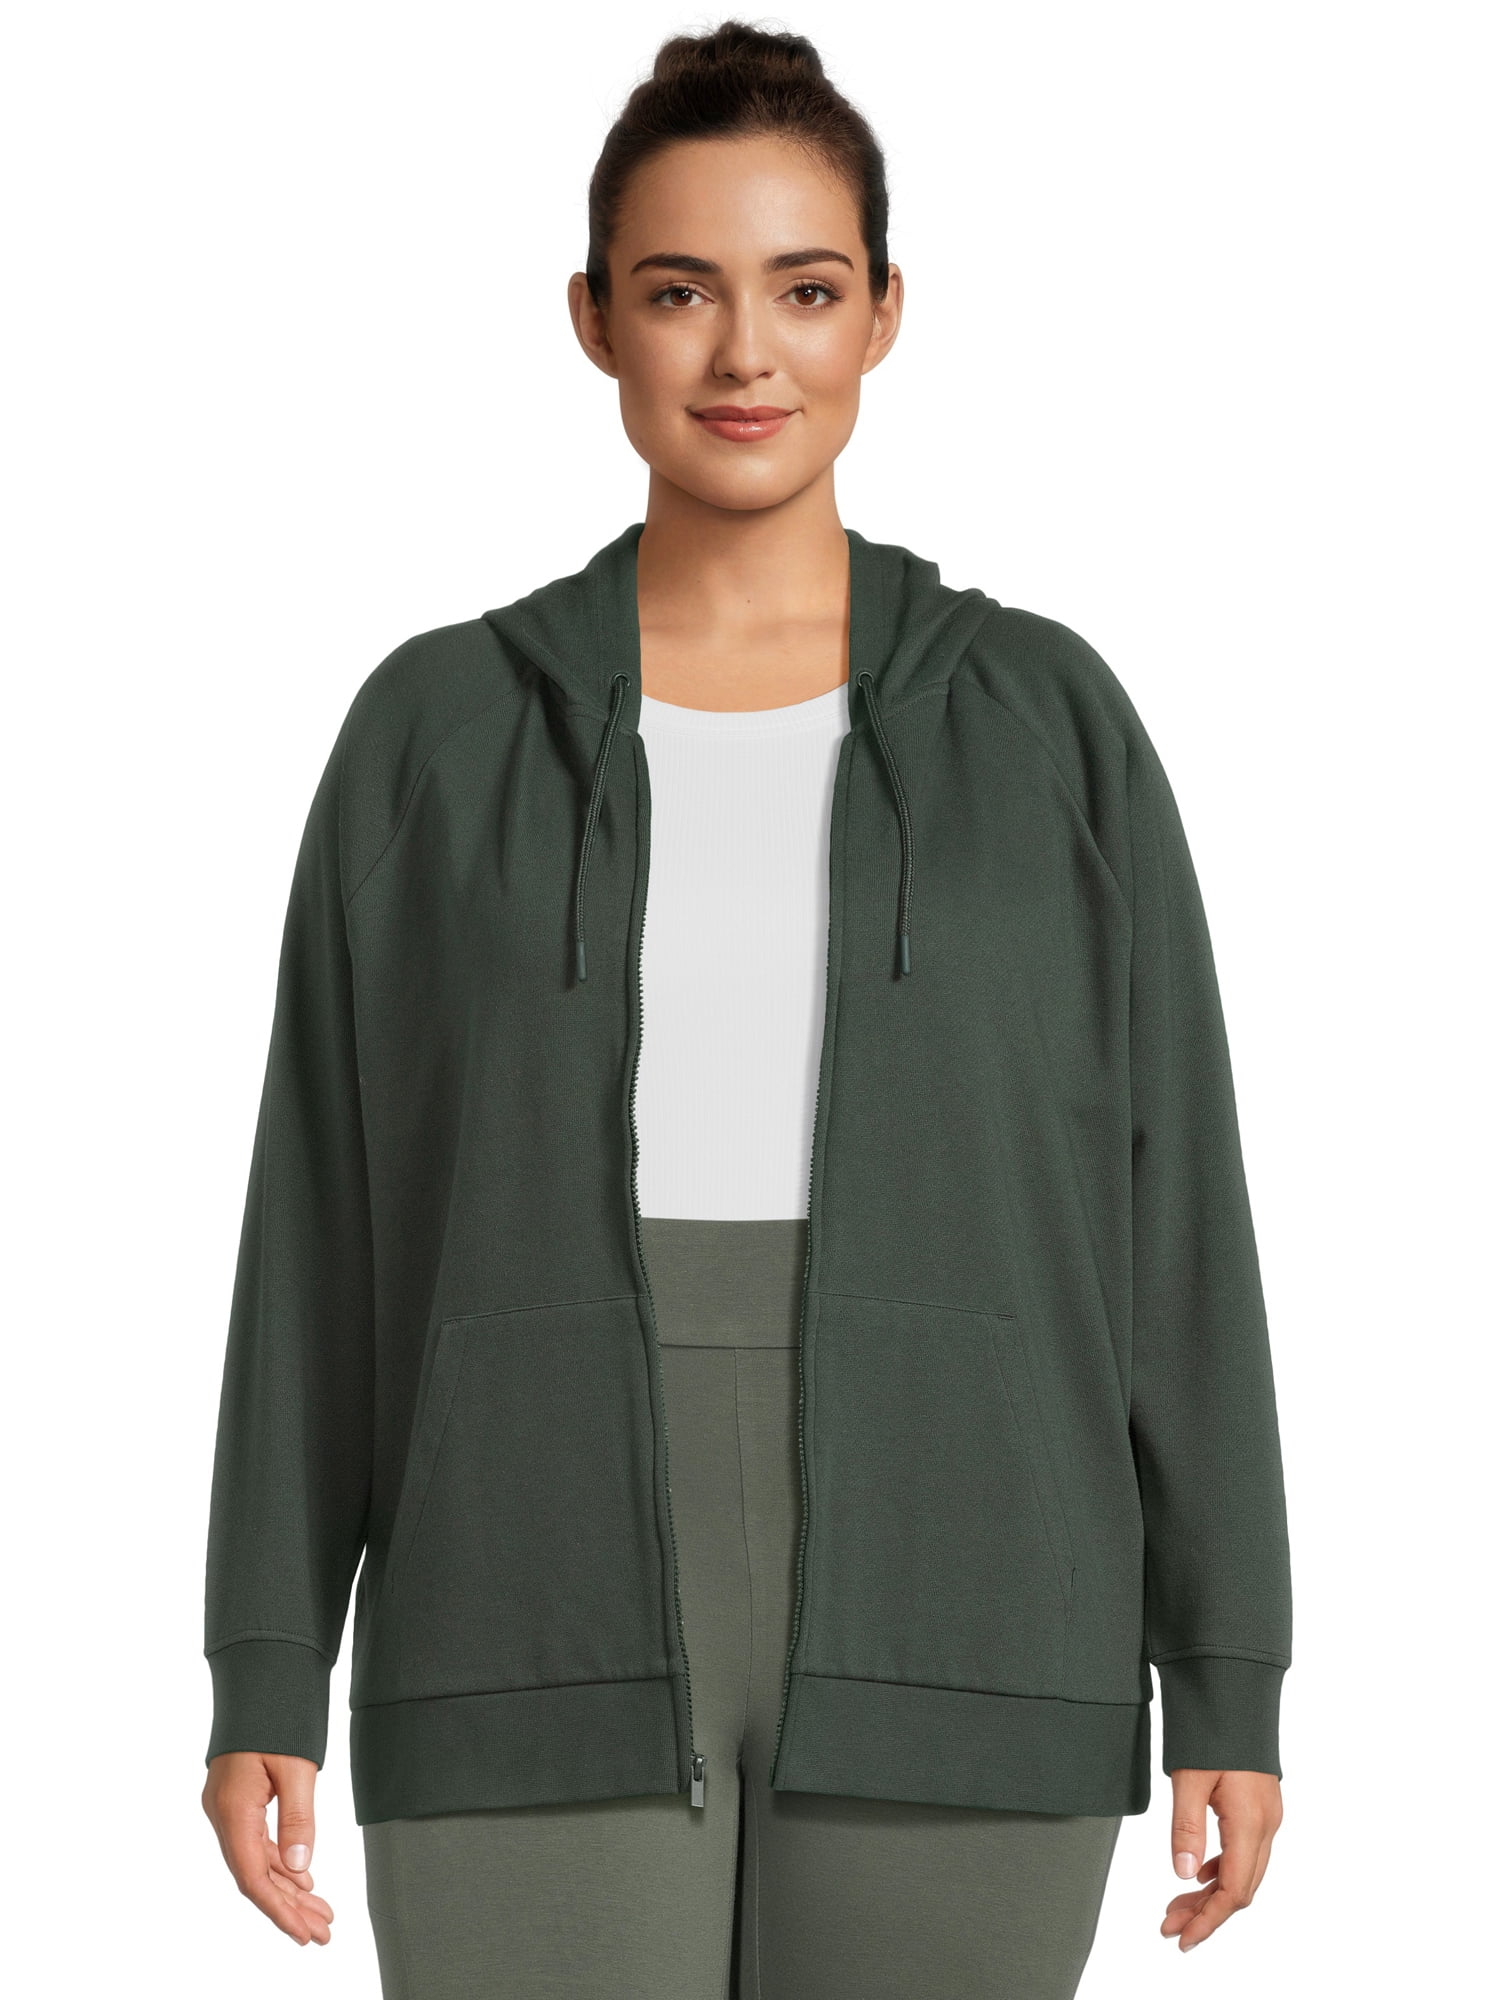 Terra & Sky Women's Plus Size Full Zip Fleece Hoodie - Walmart.com